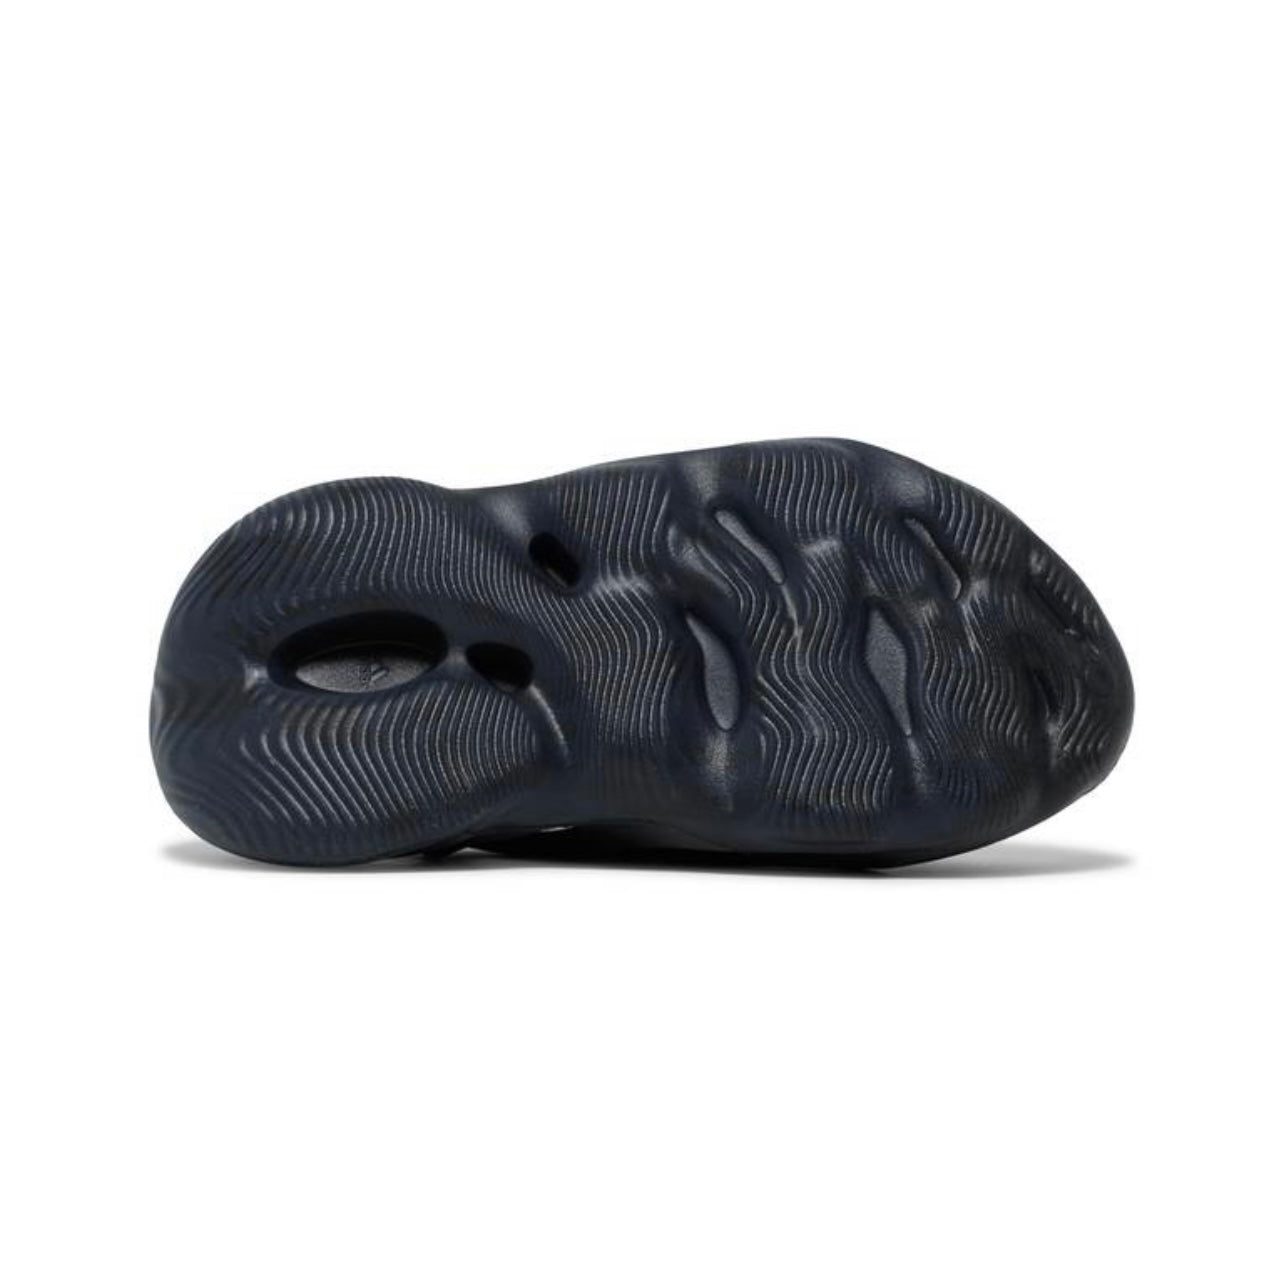 adidas Yeezy Foam Runner 'Mineral Blue'